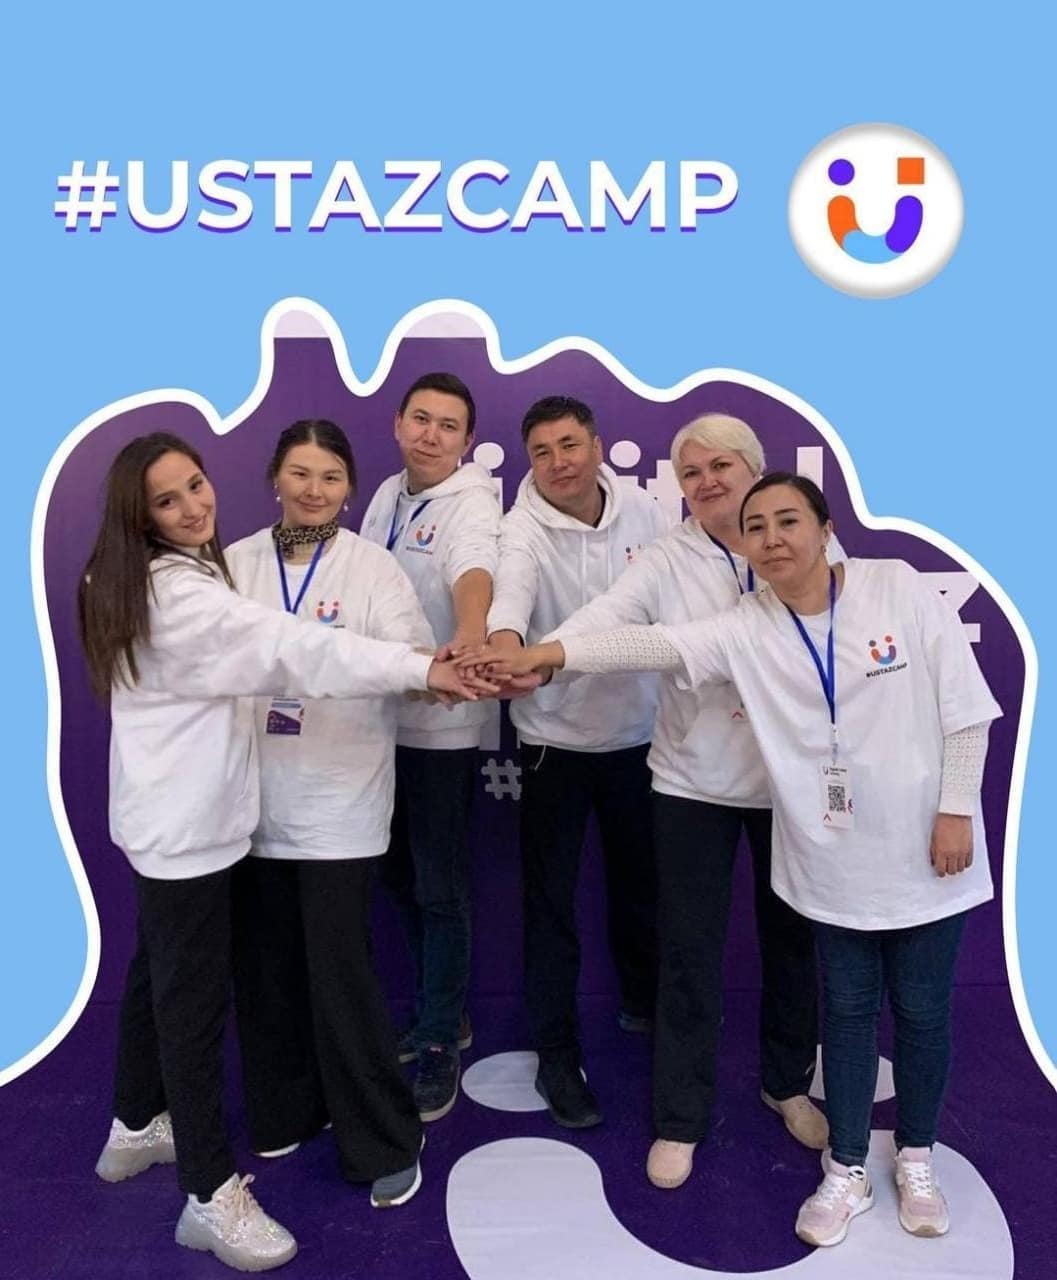 USTAZ CАMP - Қазақстандық мұғалімдерге арналған алғашқы оқу лагері